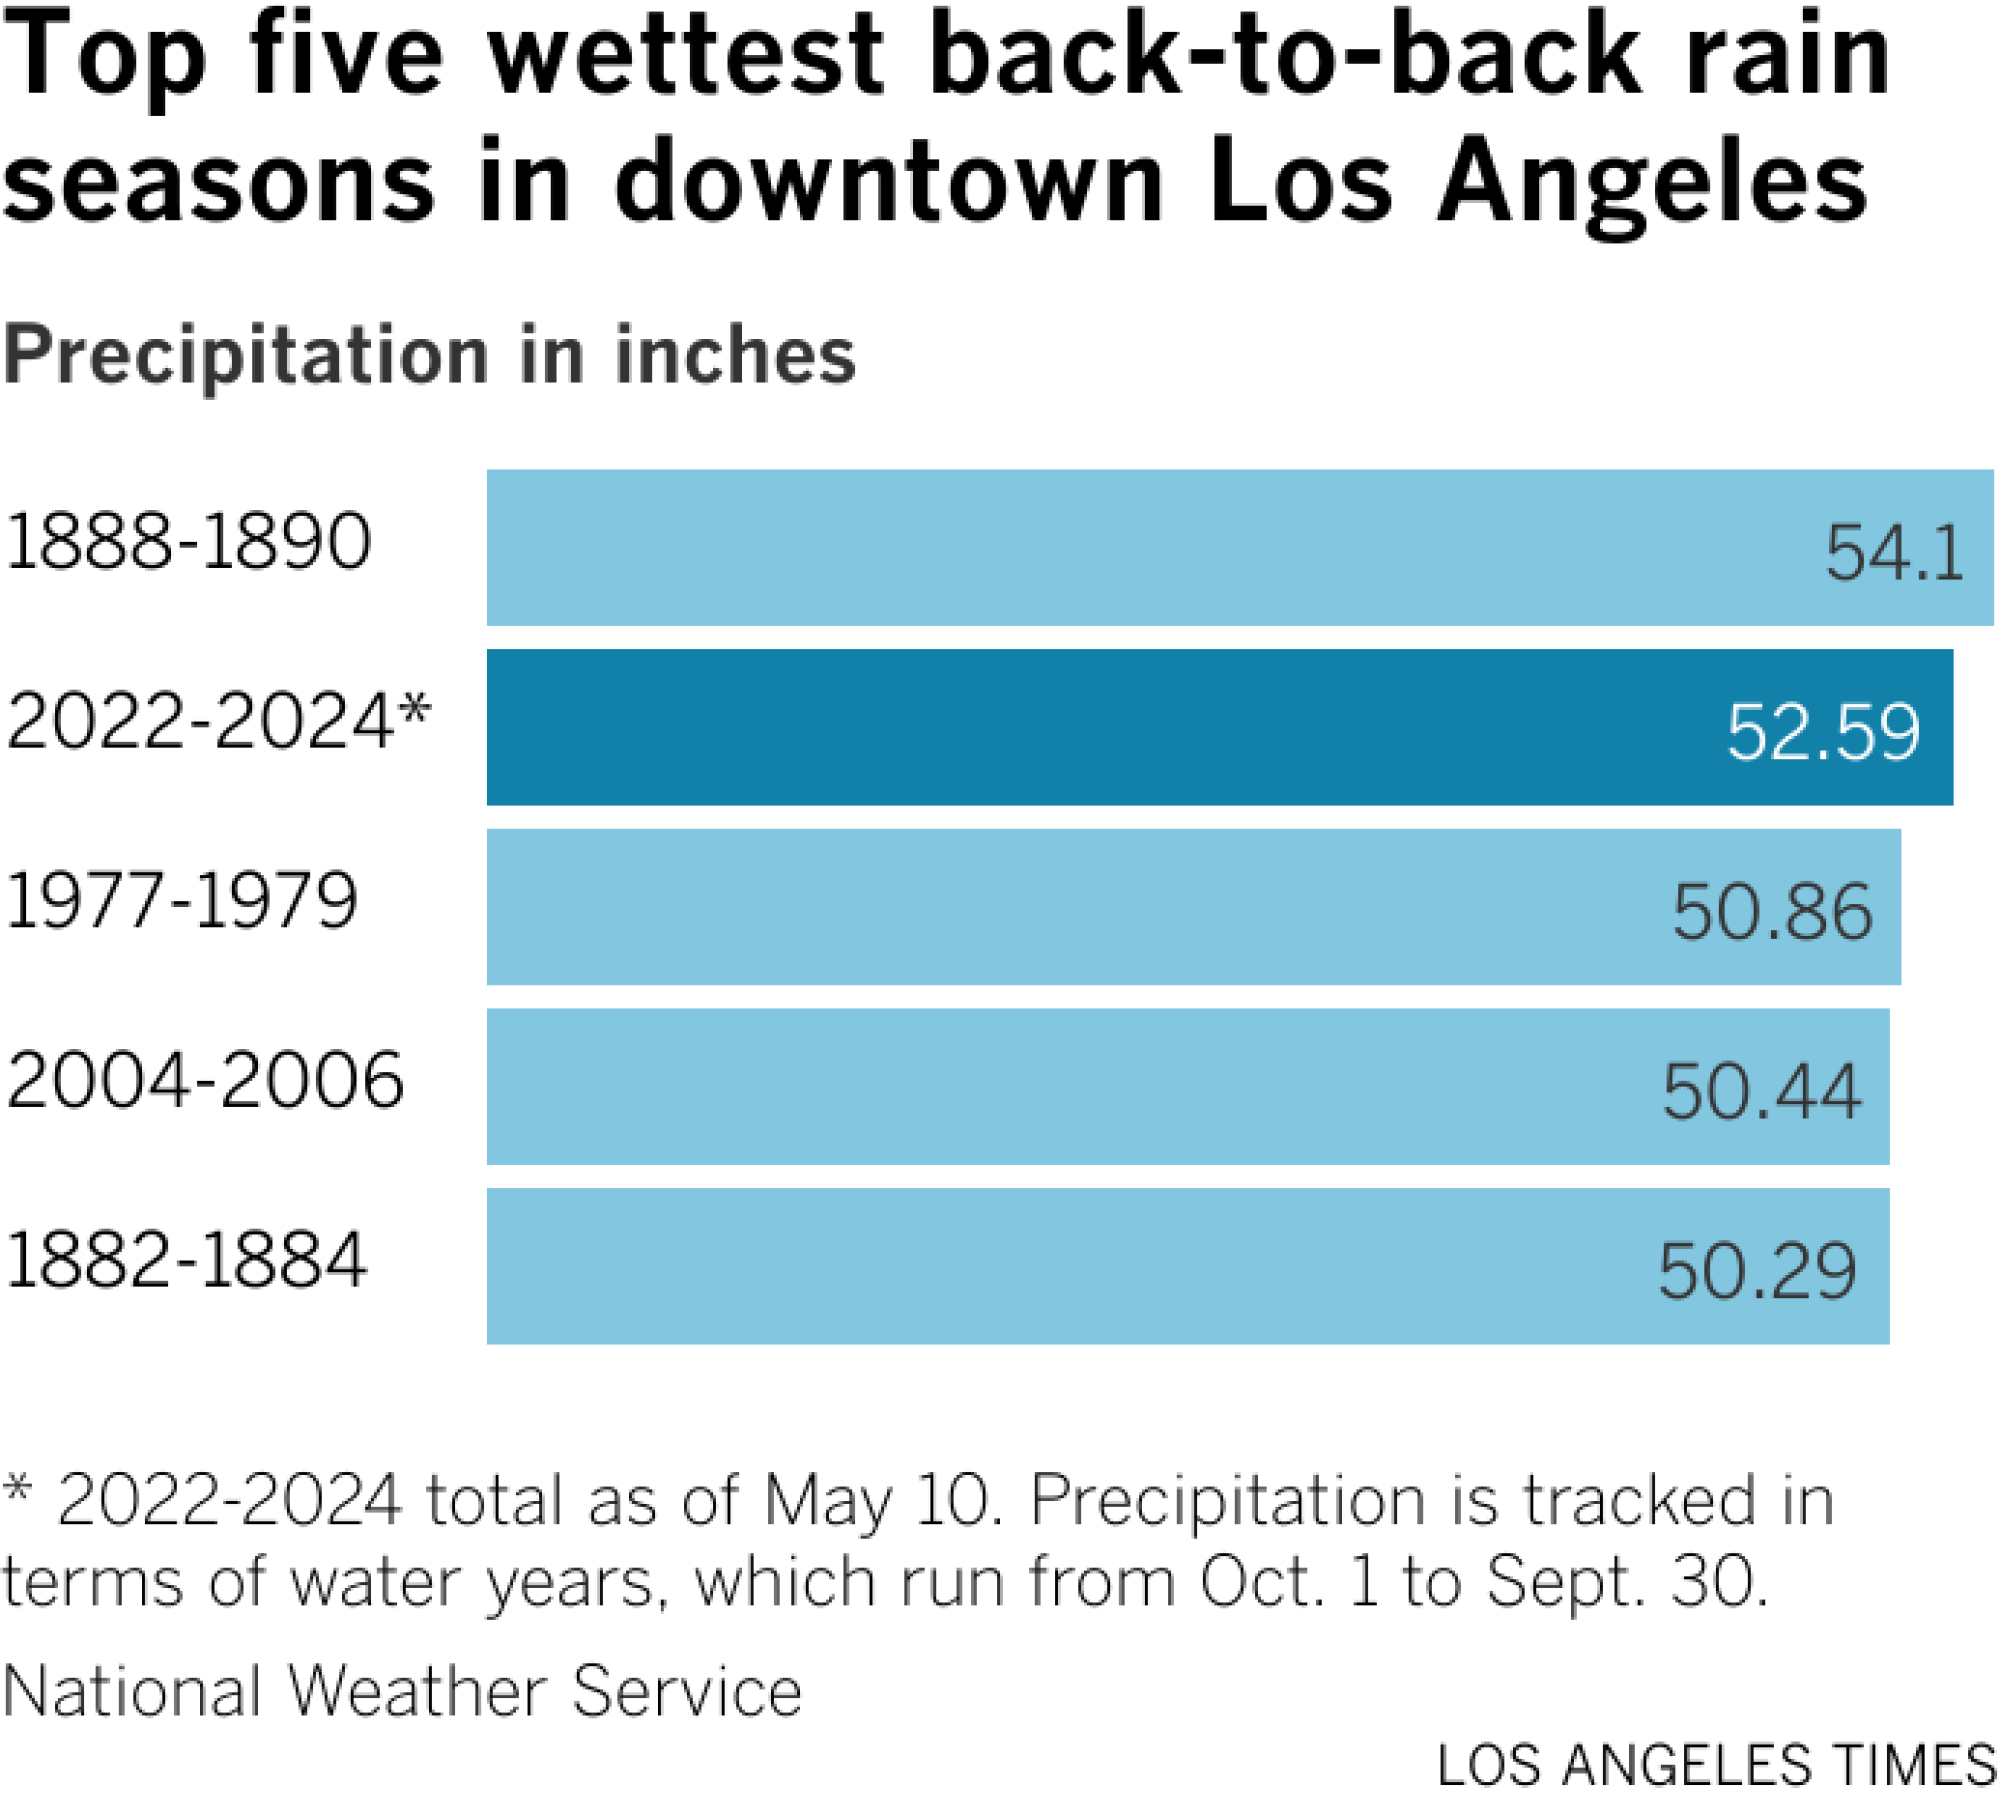 Un gráfico de barras muestra las cinco estaciones más lluviosas en el centro de Los Ángeles.  Octubre de 1888 a 1890 tuvo la mayor precipitación con 54,1 pulgadas, seguido de 2022 a 2024. 